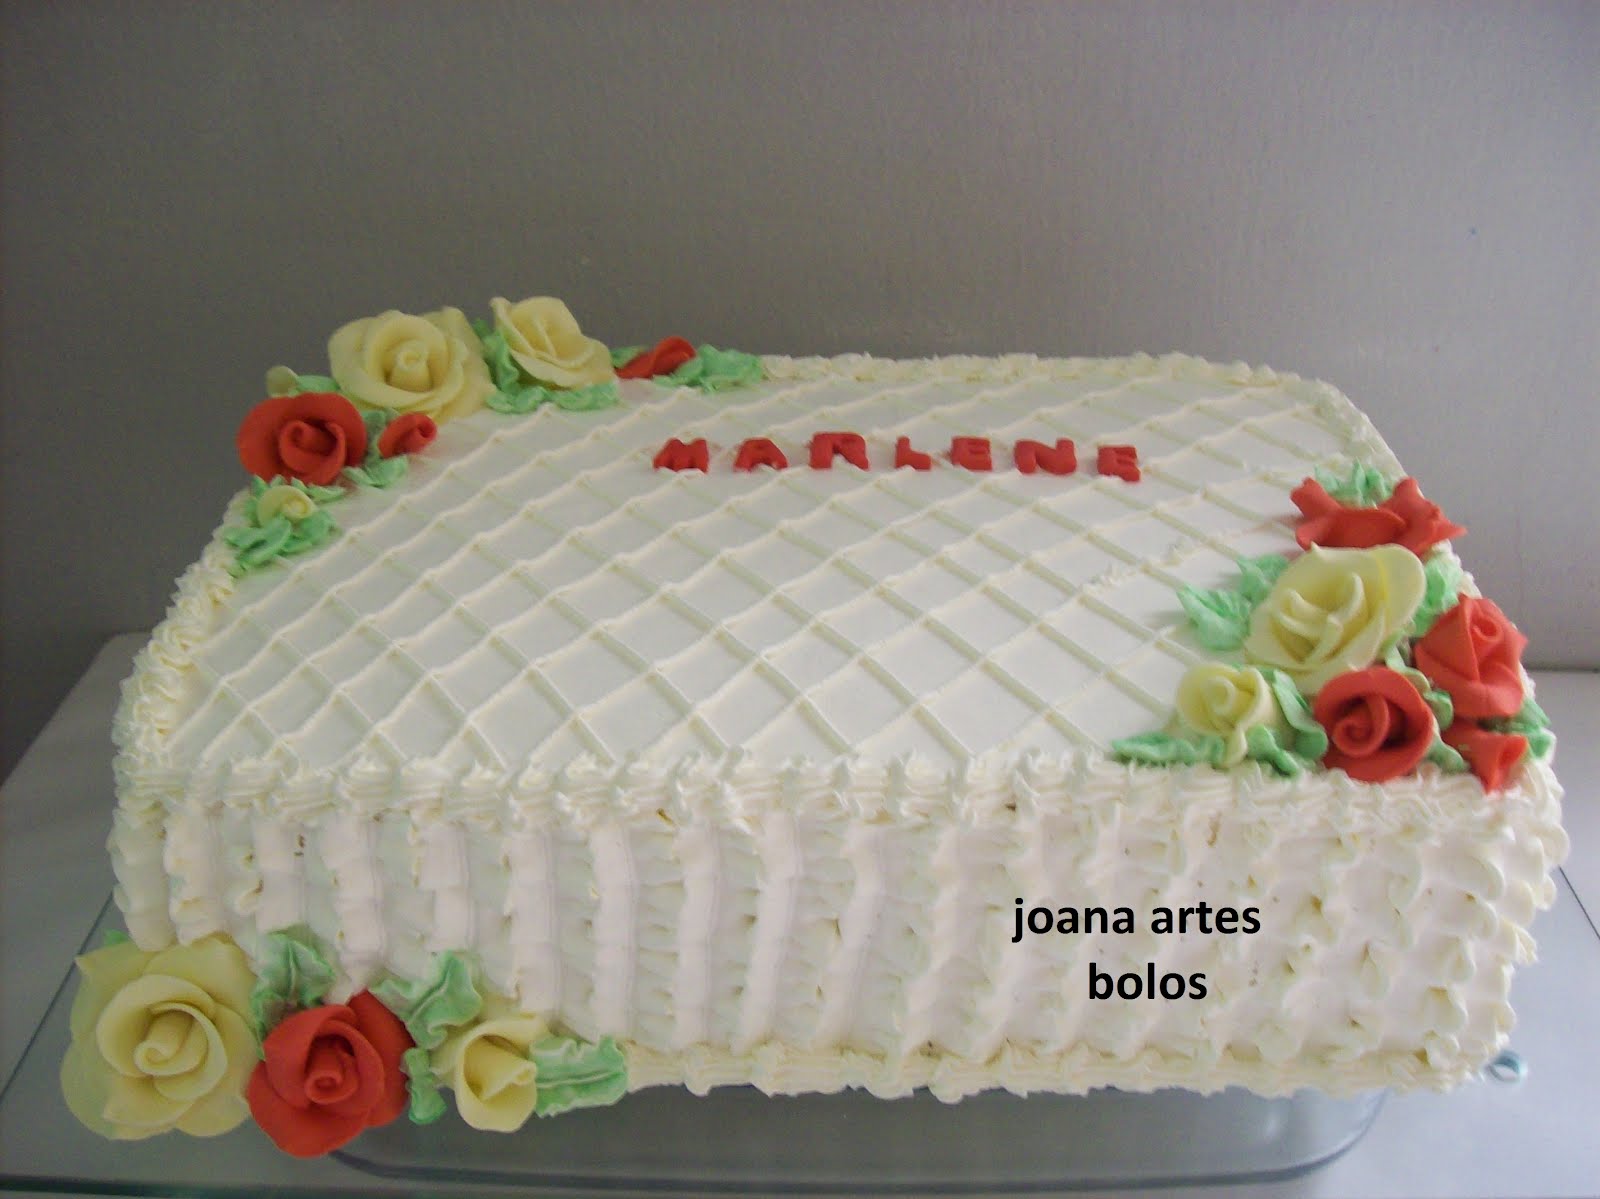 Joana Artes Bolos(Uberaba-MG) 34-33124684: Bolo feminino em chantilly